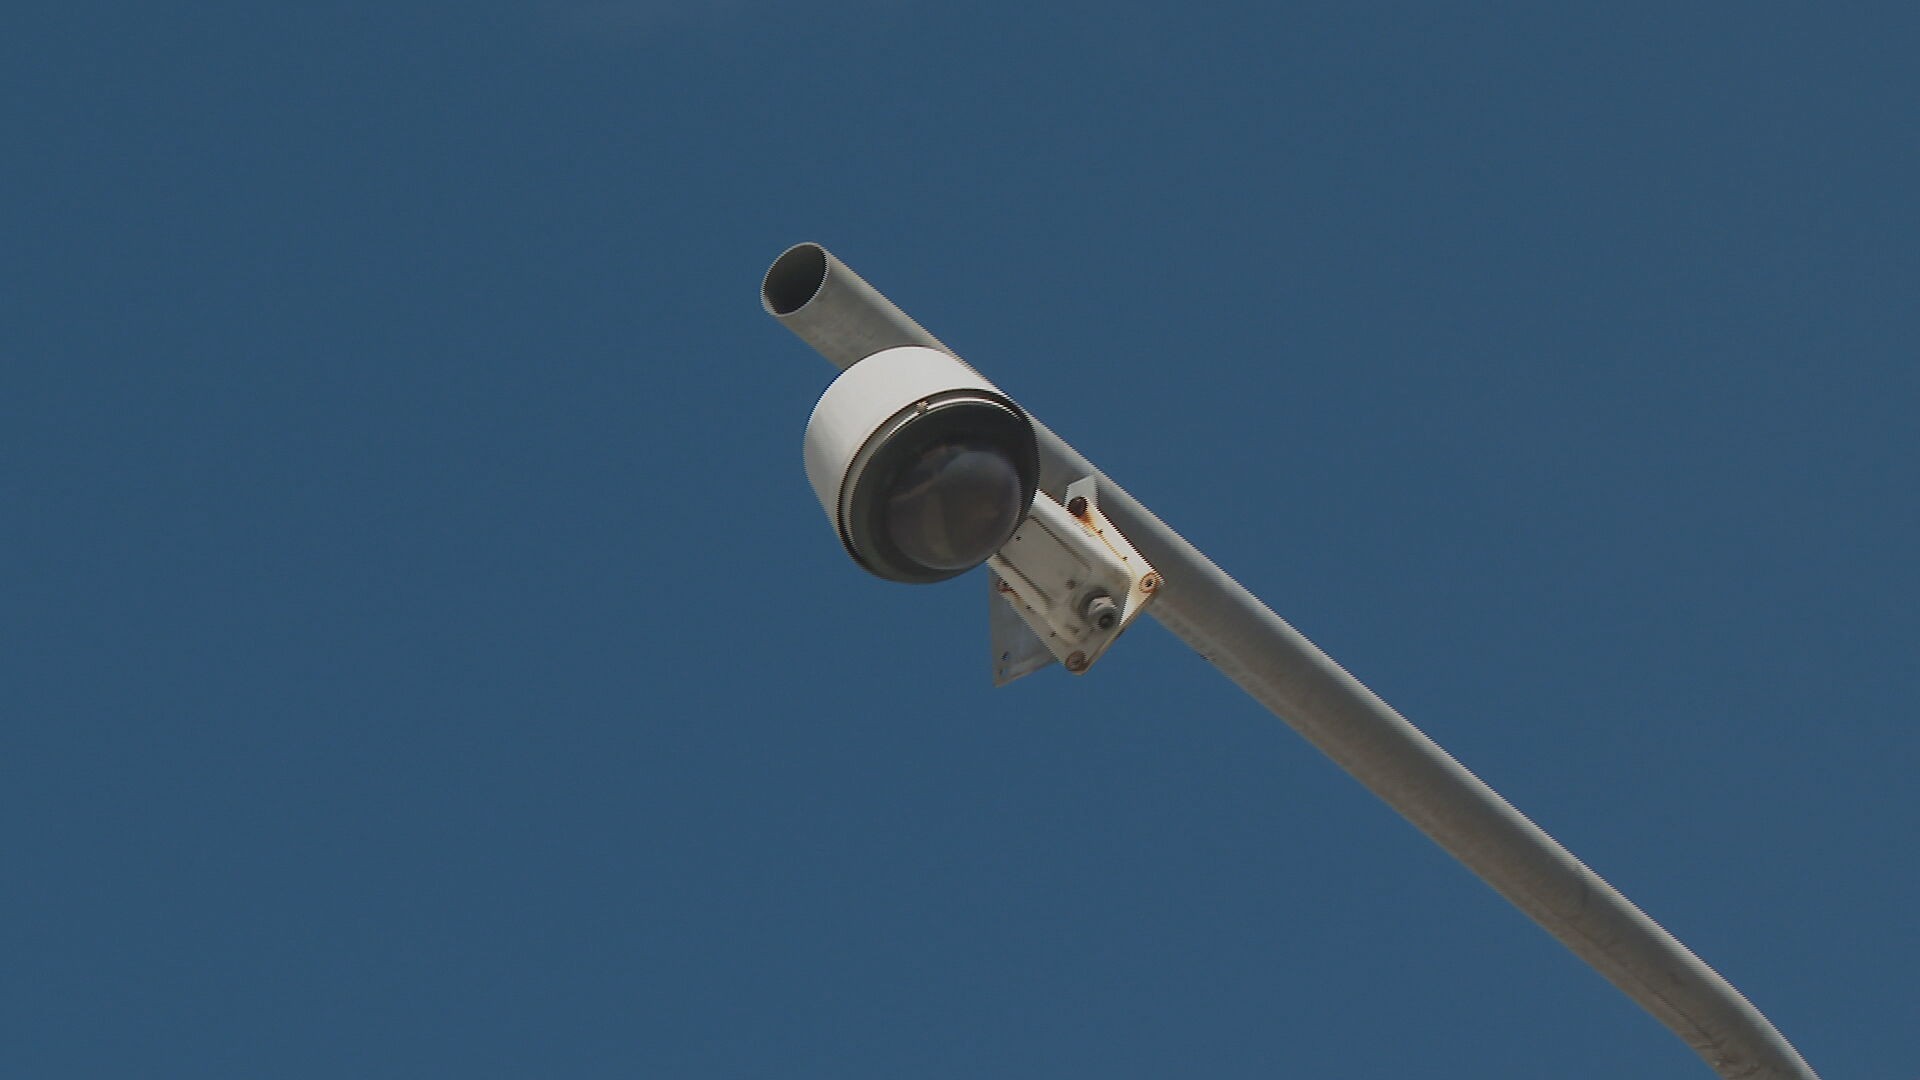 Edital do governo de Pernambuco prevê uso de câmeras de segurança para monitorar 'vadiagem' e é alvo de críticas